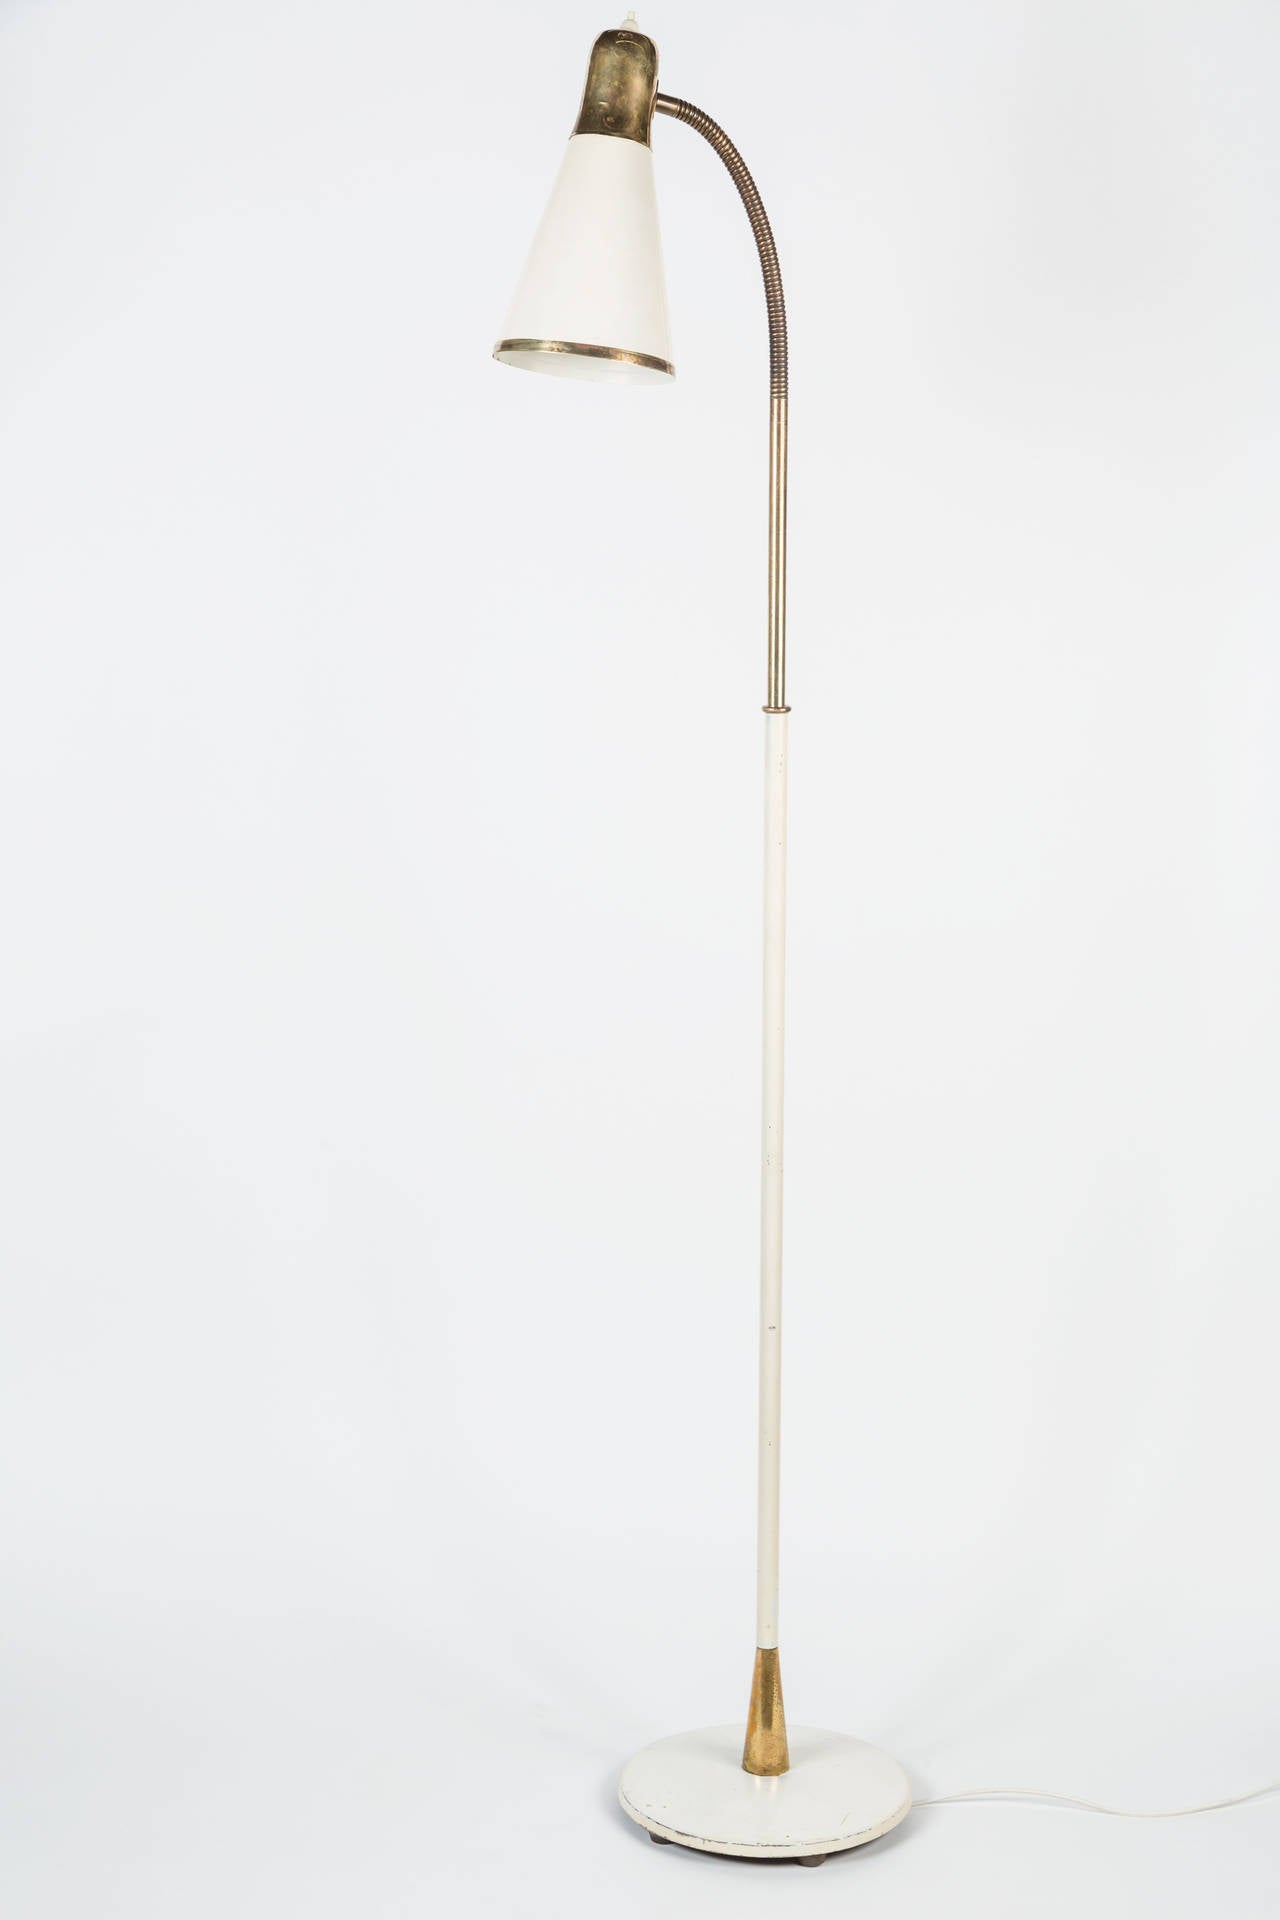 Norwegian Birger Dahl Floor Lamp